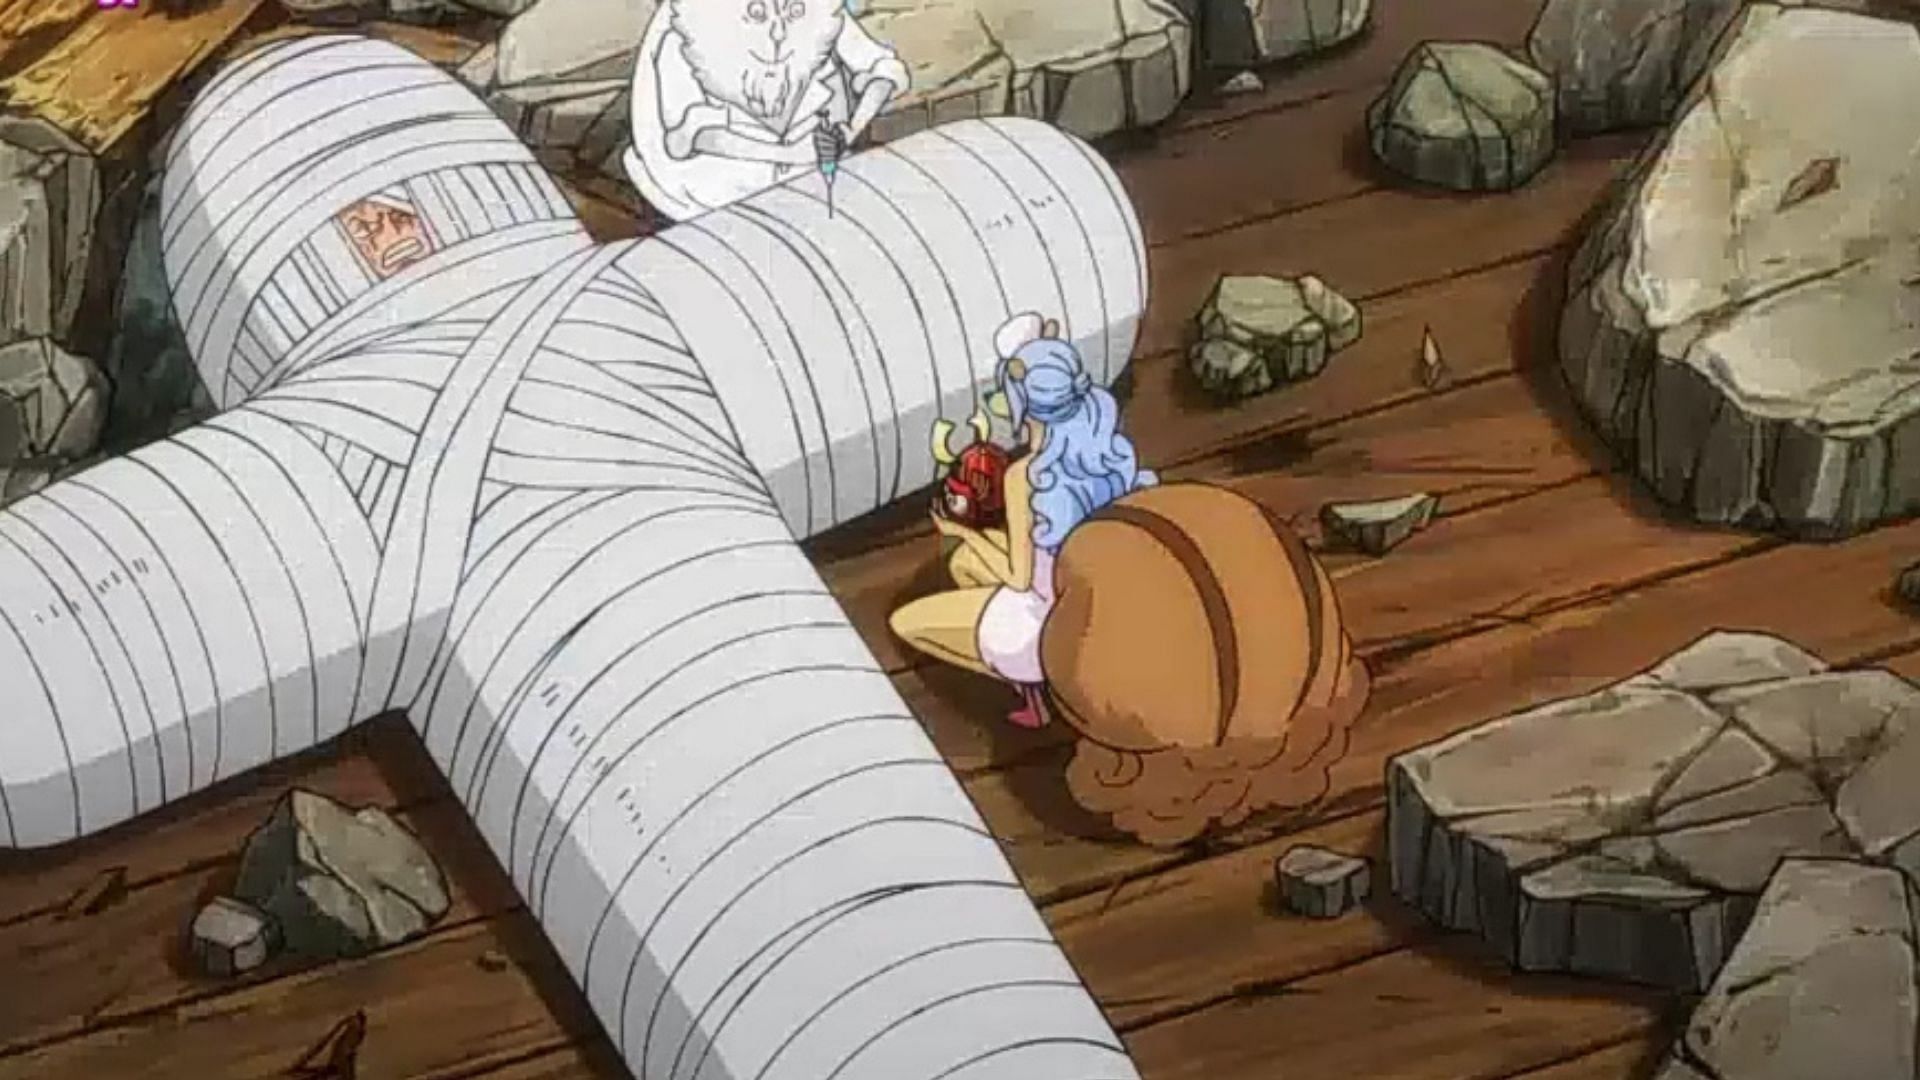 Zoro in bandages (Image via Toei Animation)